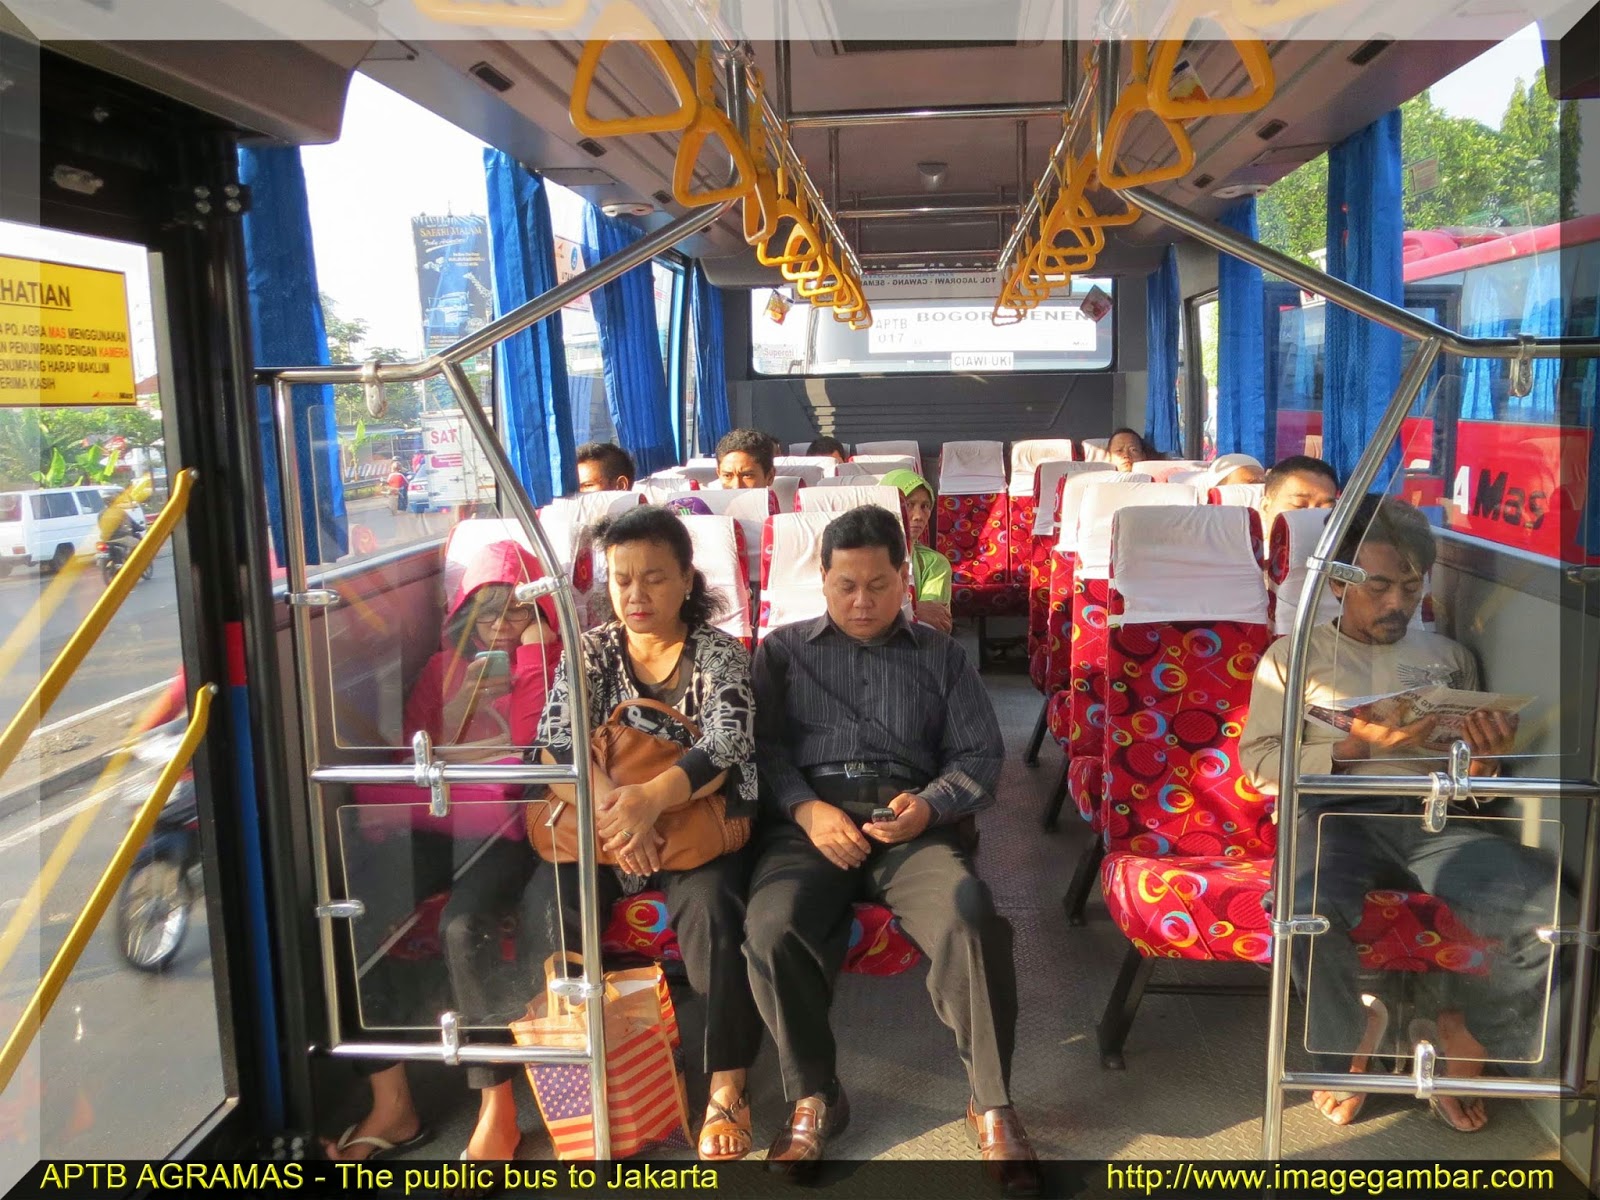 Image Gambar Untuk Semua Bus Angkutan Umum APTB